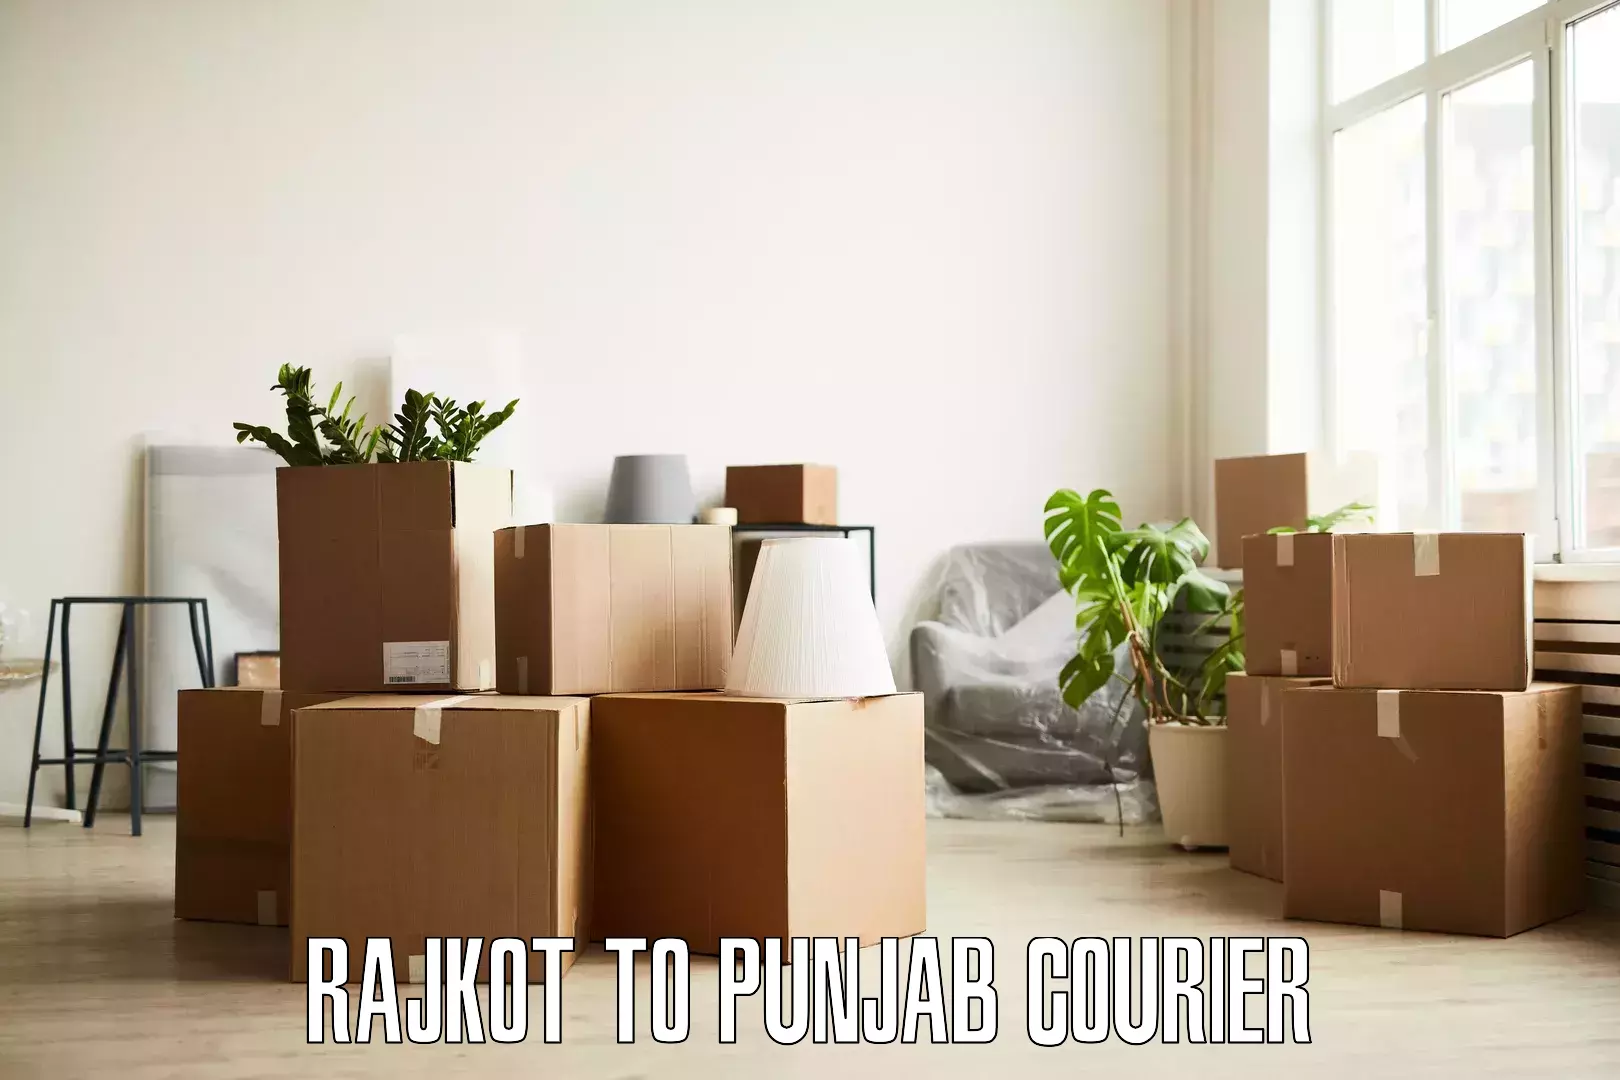 Furniture transport experts in Rajkot to Punjab